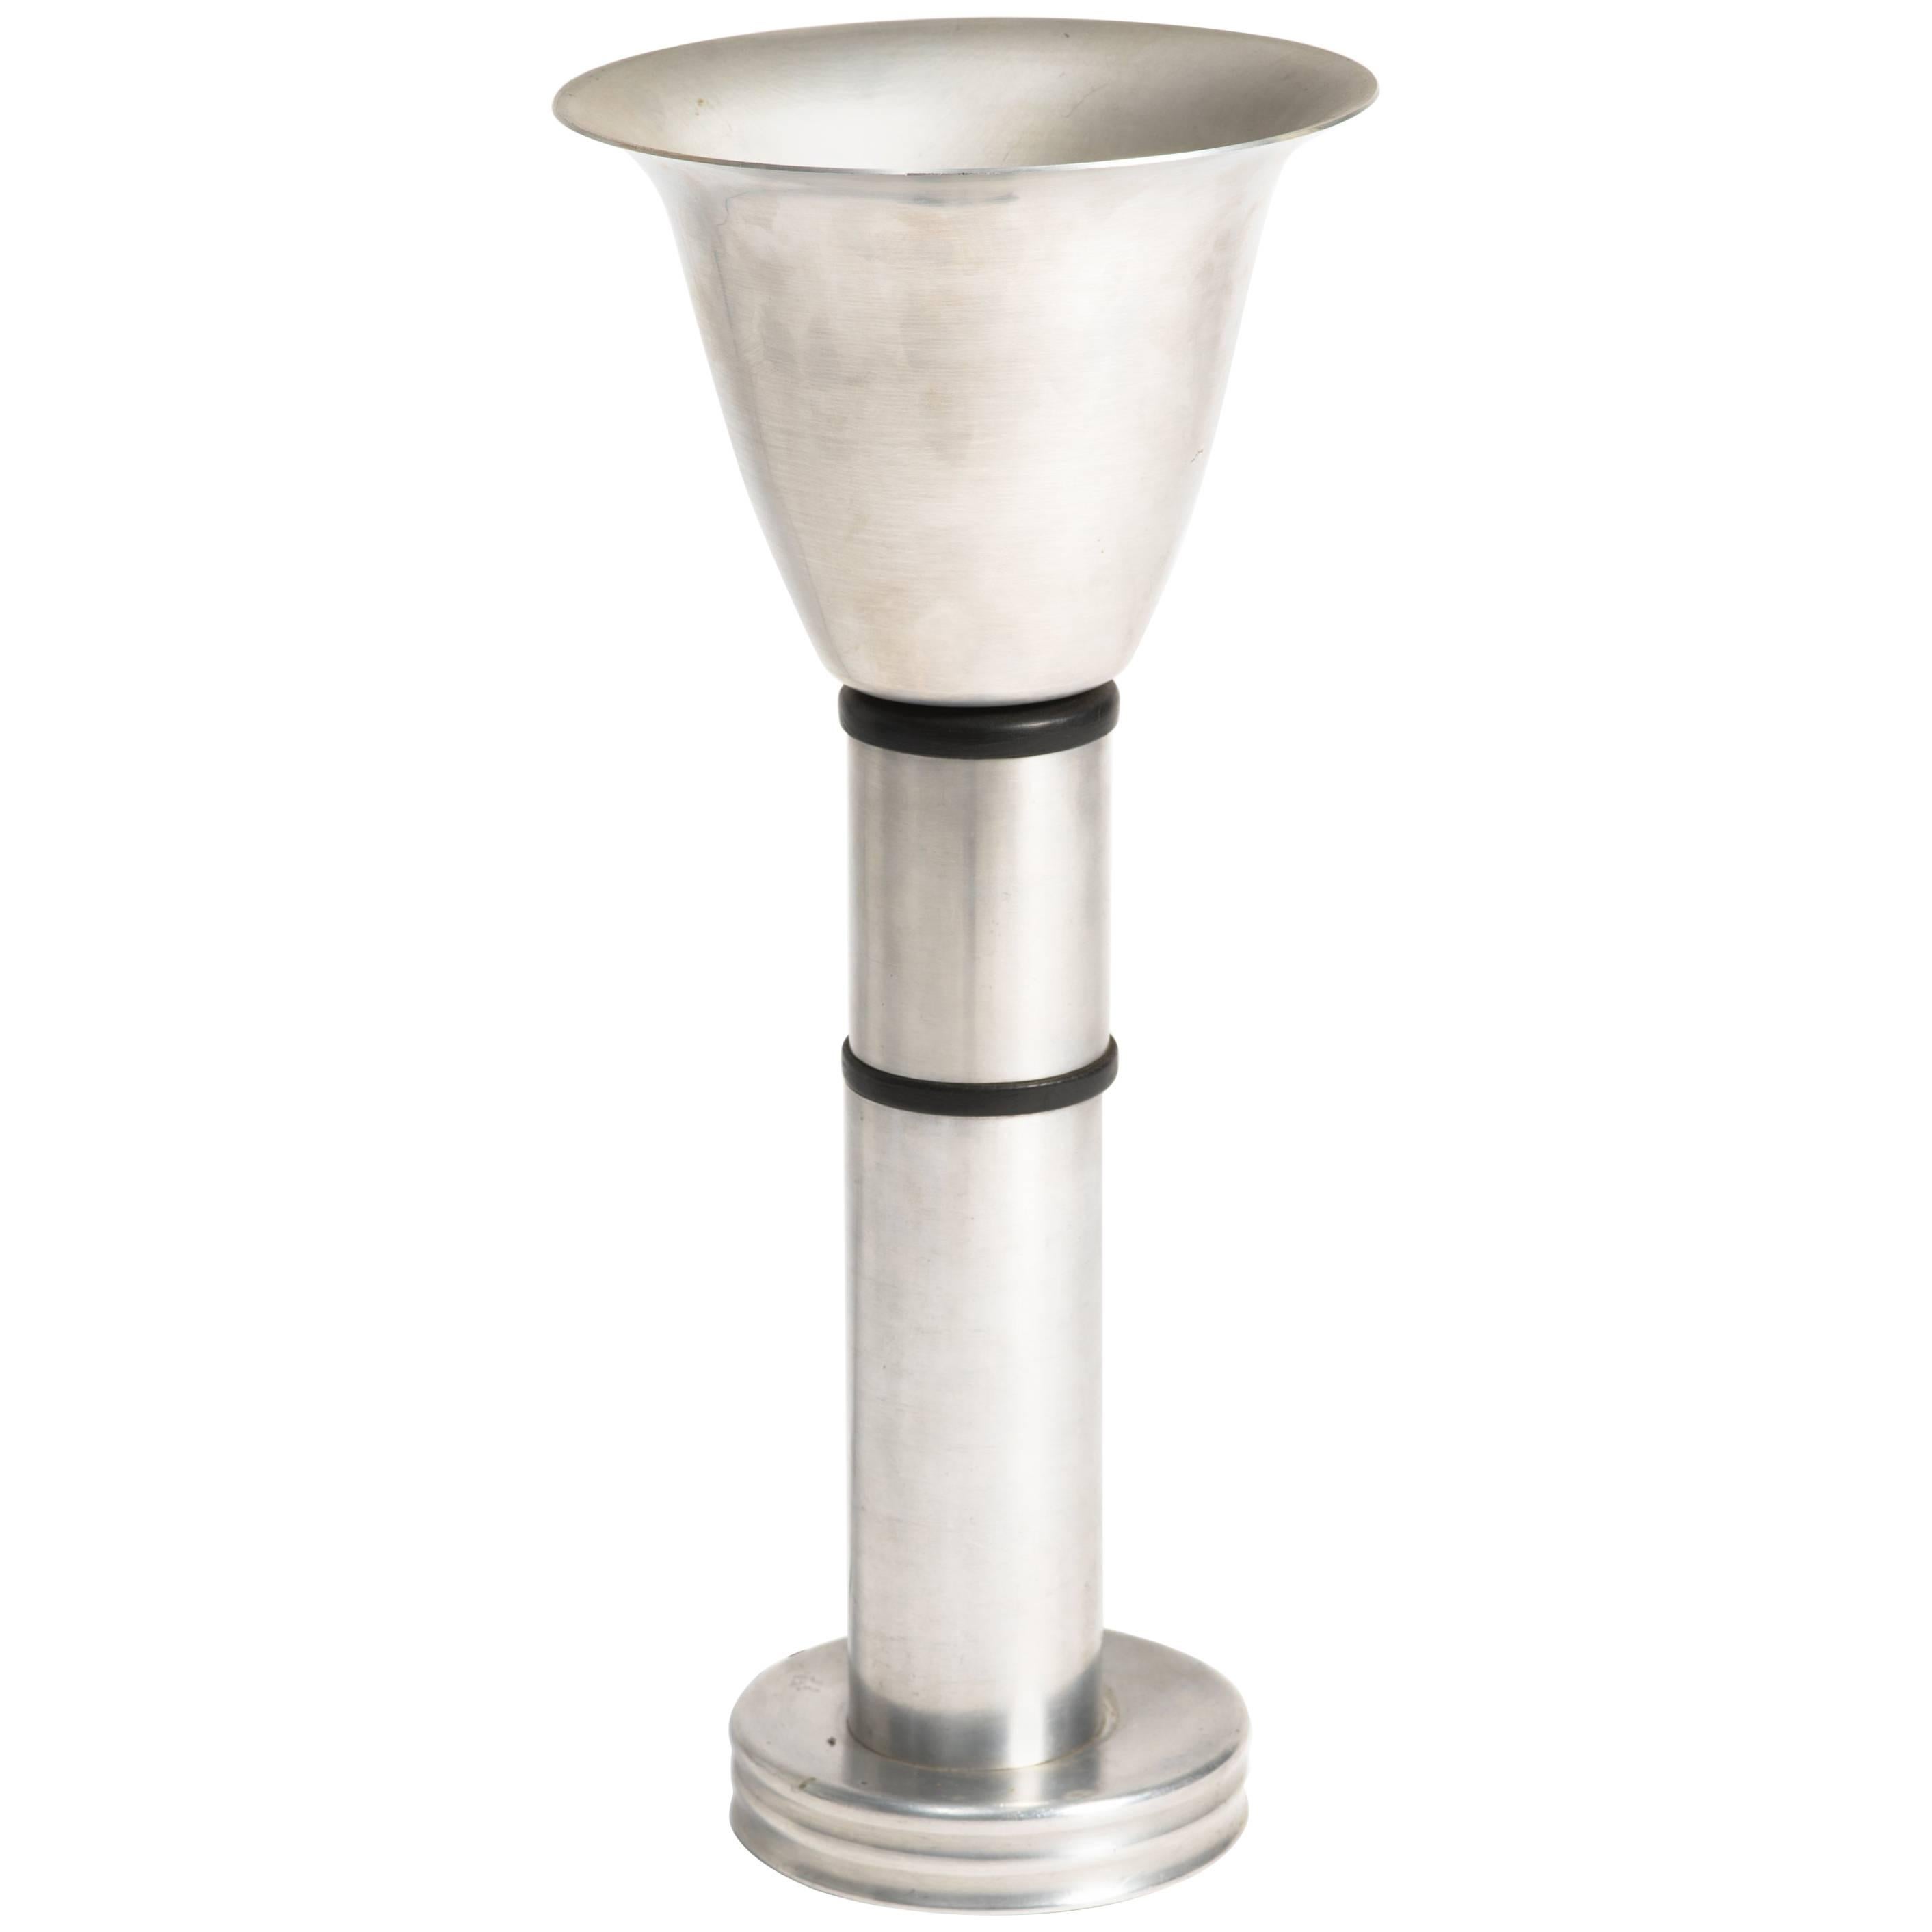 Russel Wright Style Aluminium Lamp